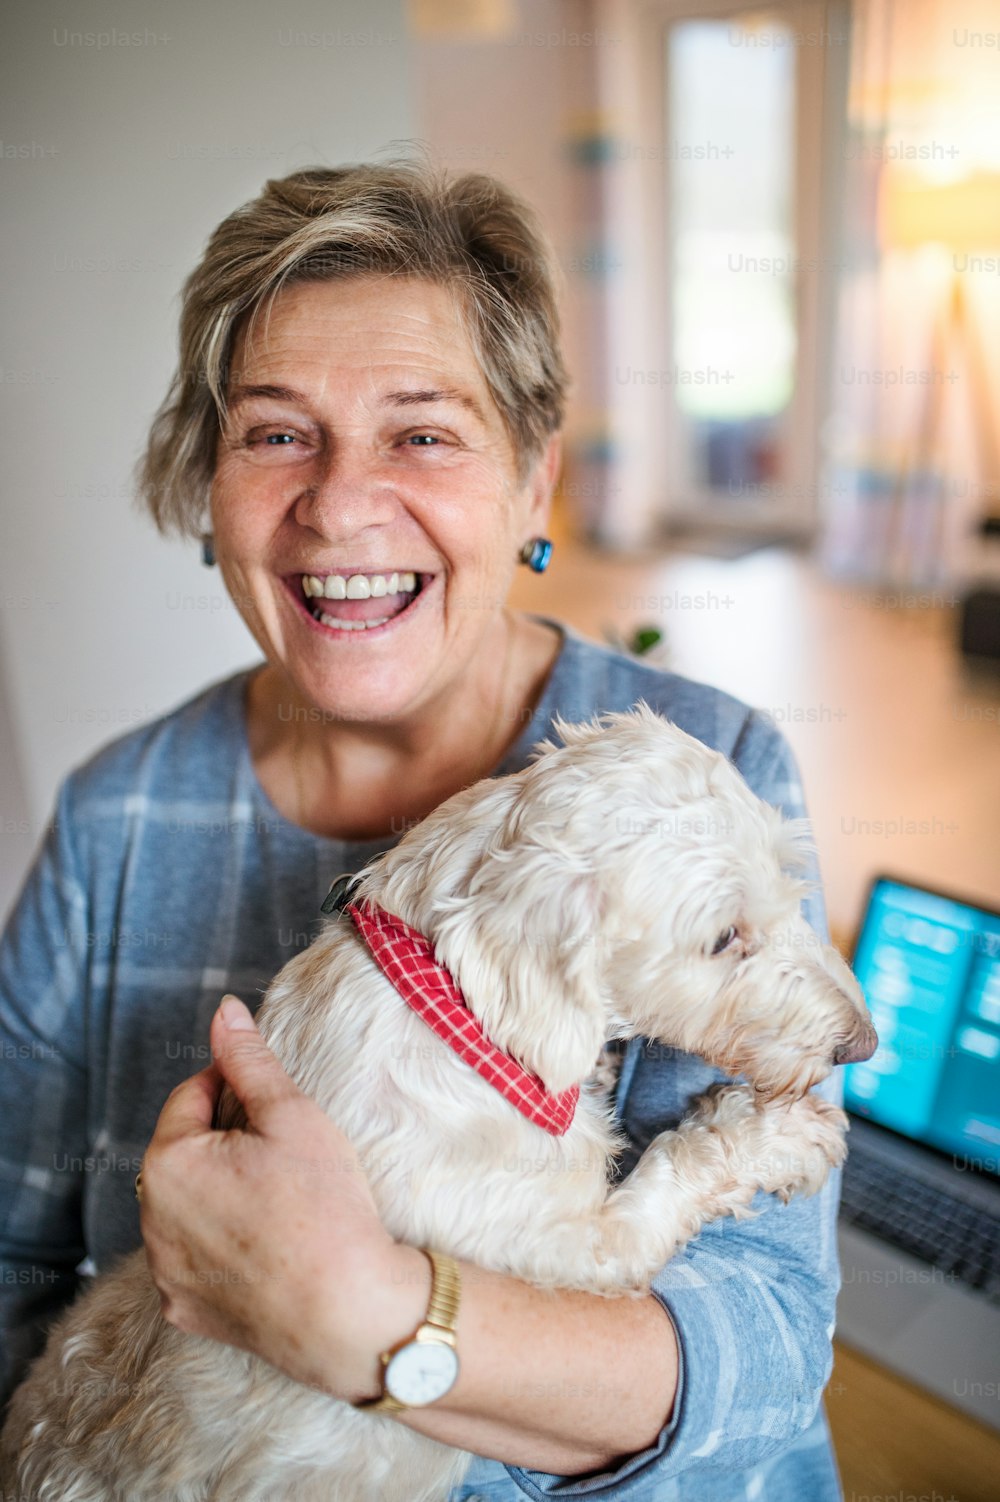 Femme âgée joyeuse avec chien de compagnie et ordinateur portable travaillant dans un bureau à domicile.